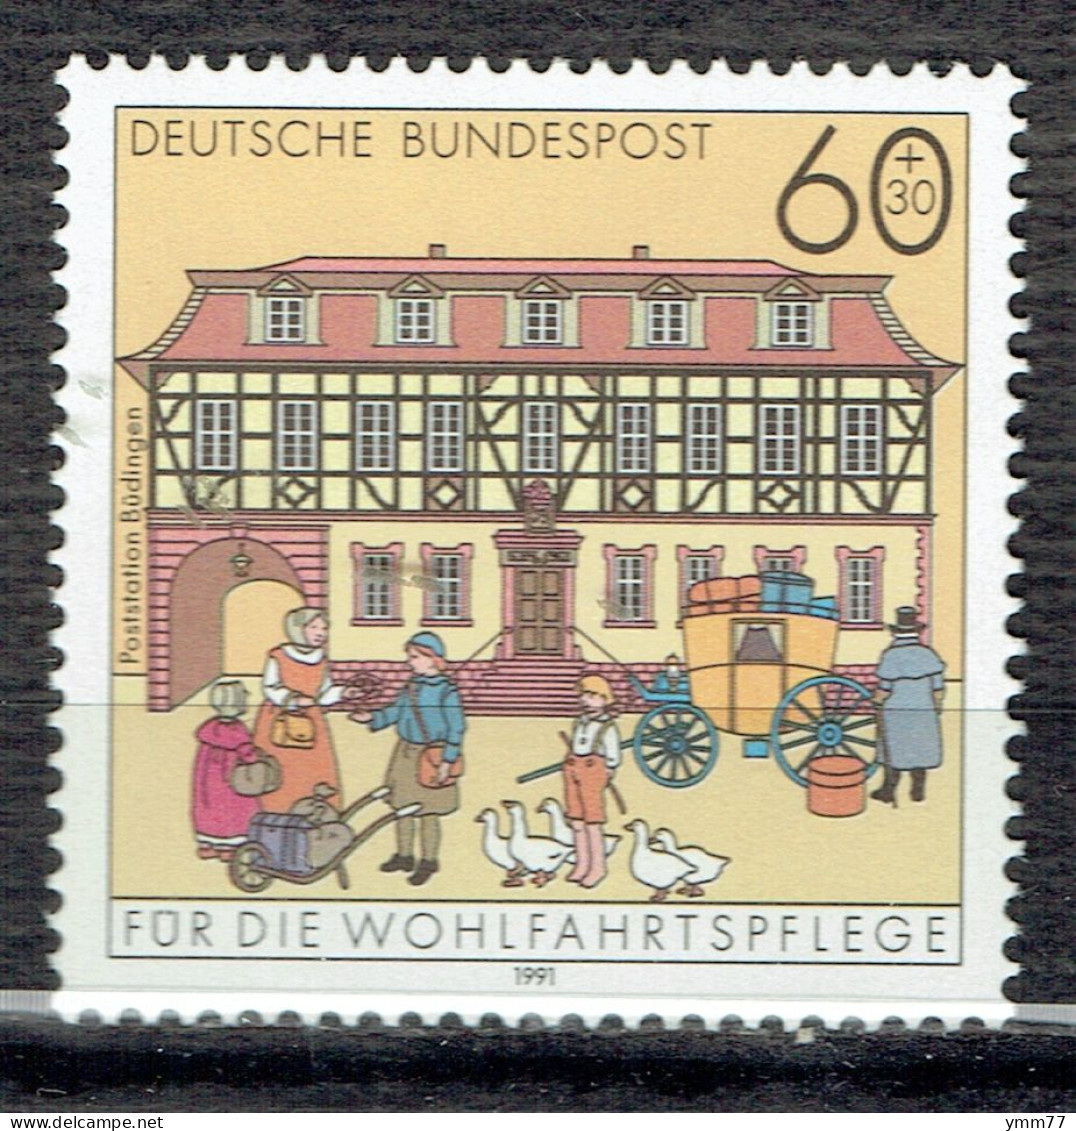 Surtaxe Au Profit D'œuvres De Bienfaisance. Bureaux De Poste Du Passé : Büdingen - Unused Stamps